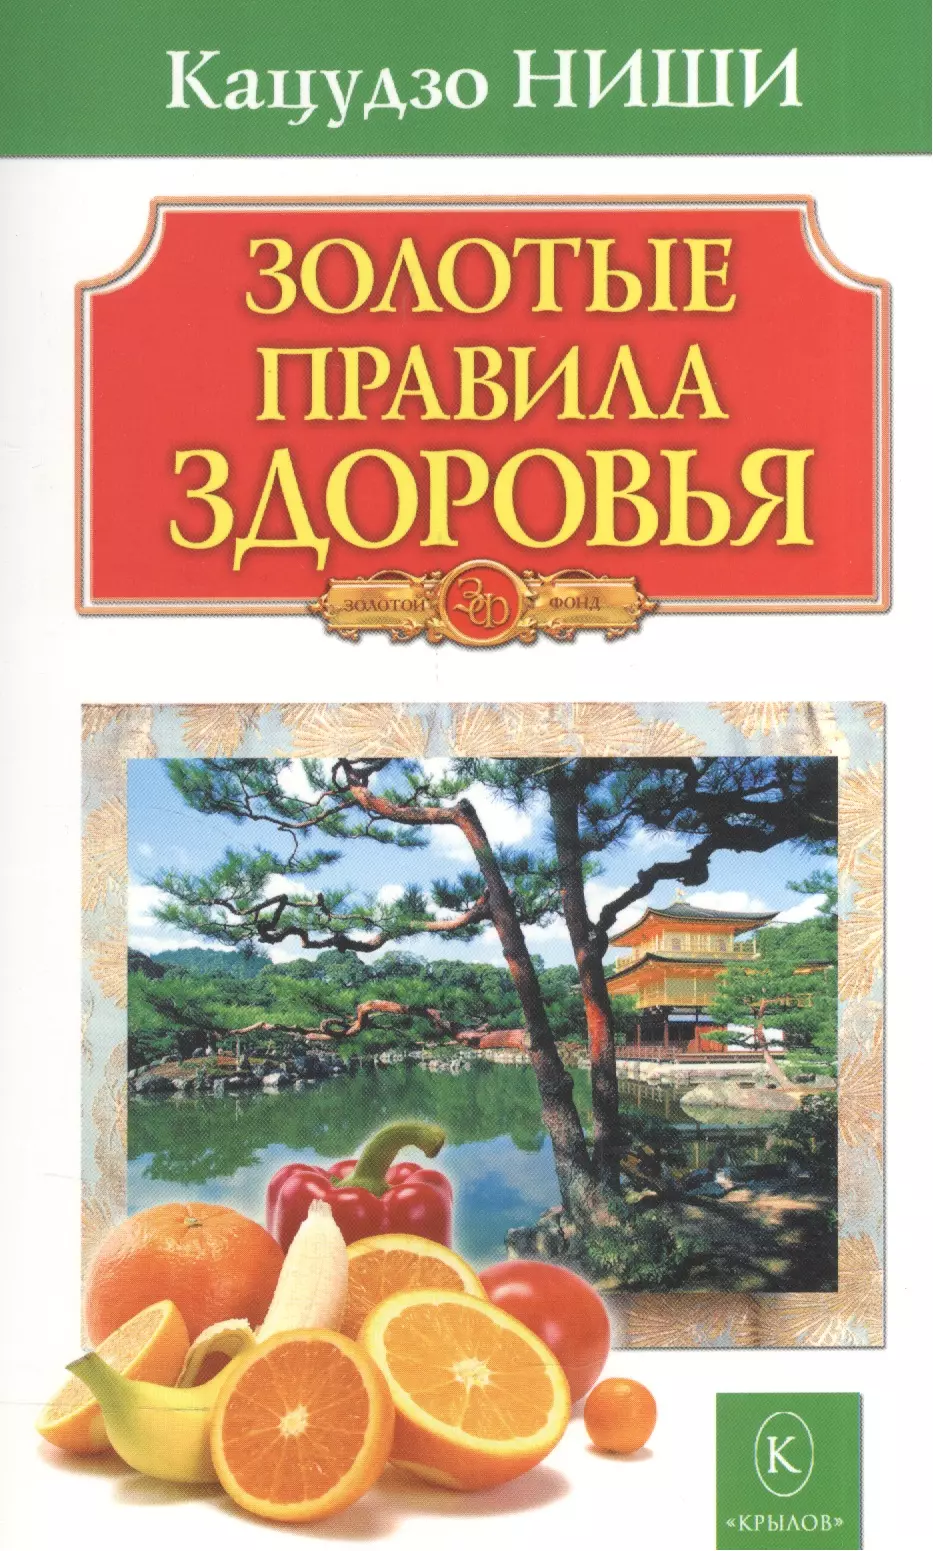 Ниши Кацудзо Золотые правила здоровья 16-е изд.